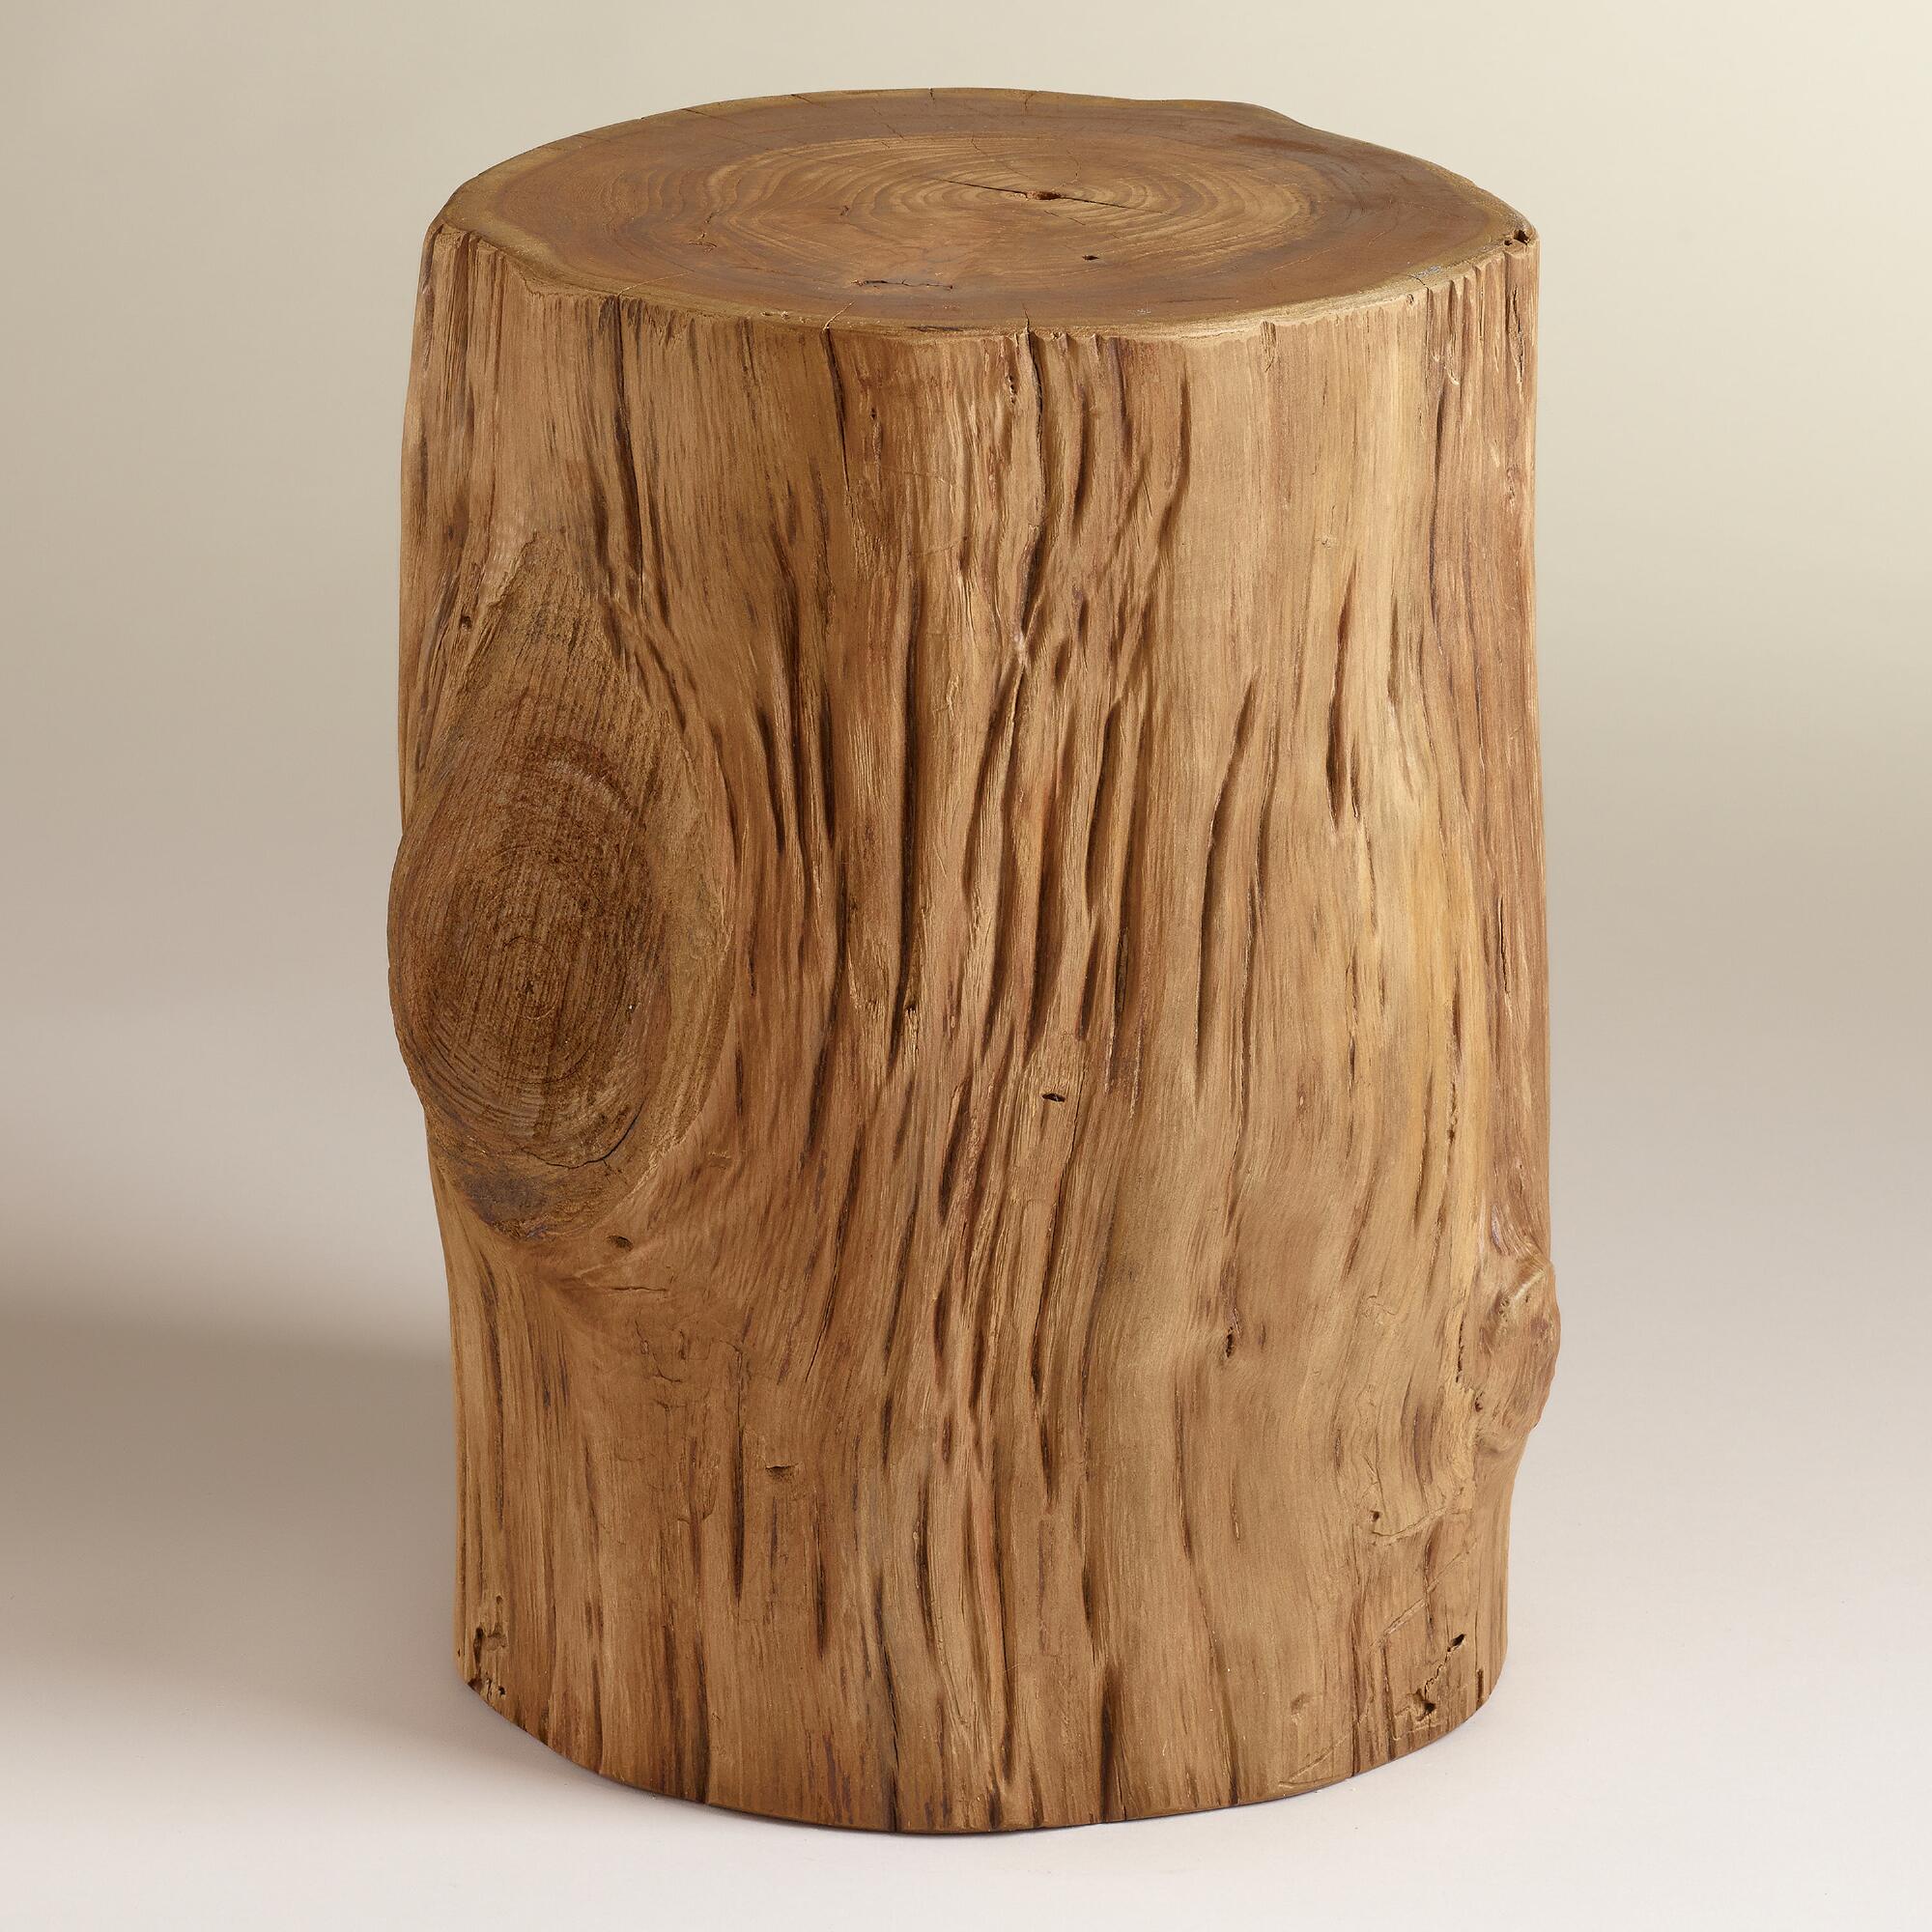 Teak Tree Stump Table | World Market